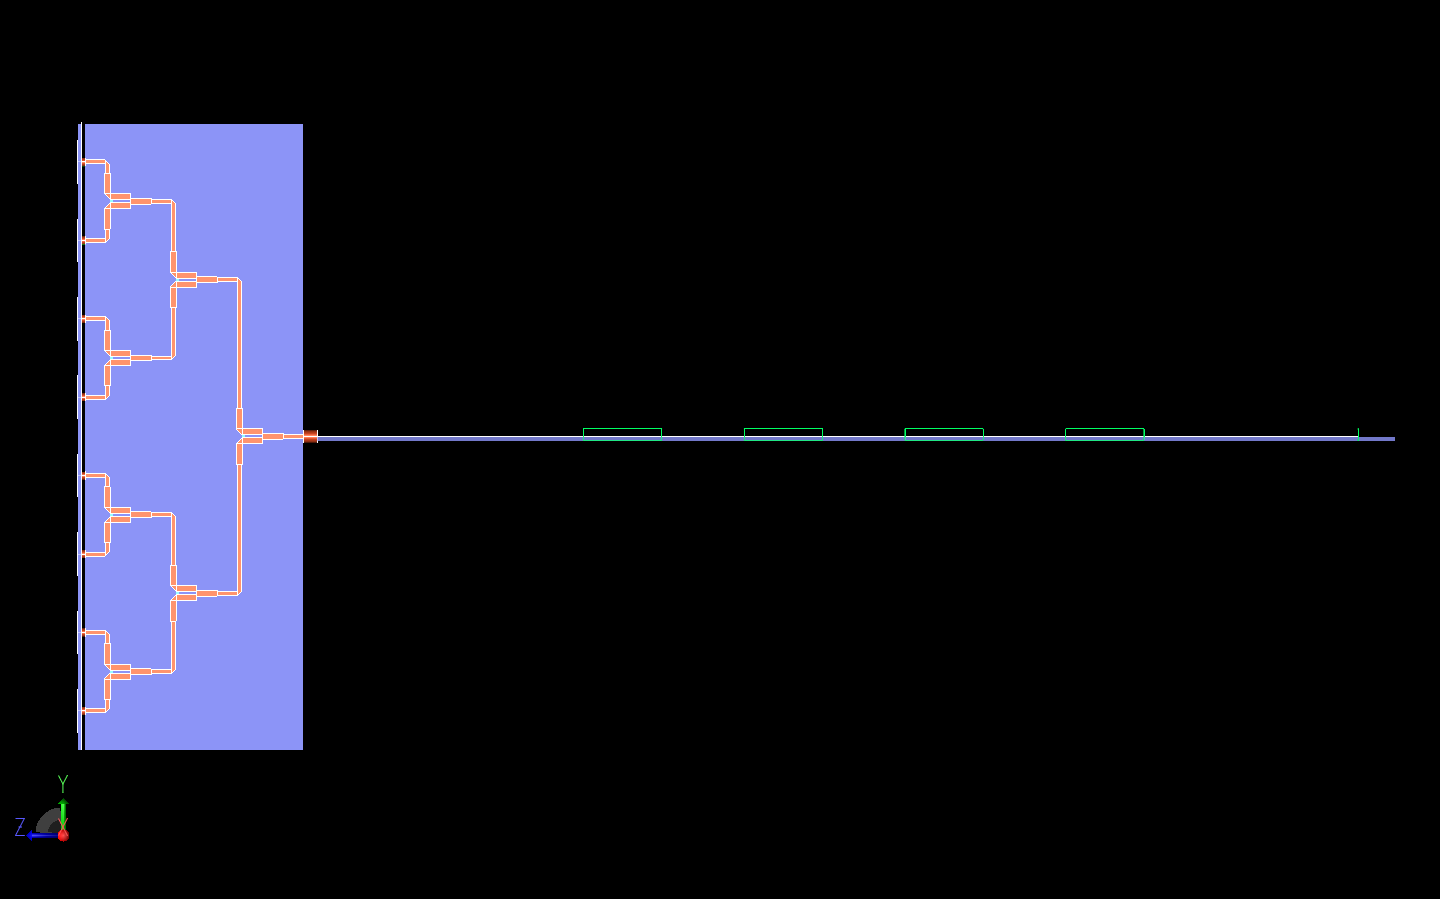 図15：システム全体の側面図であり、3段のウィルキンソン・パワー・デバイダーがよりはっきりと見える。